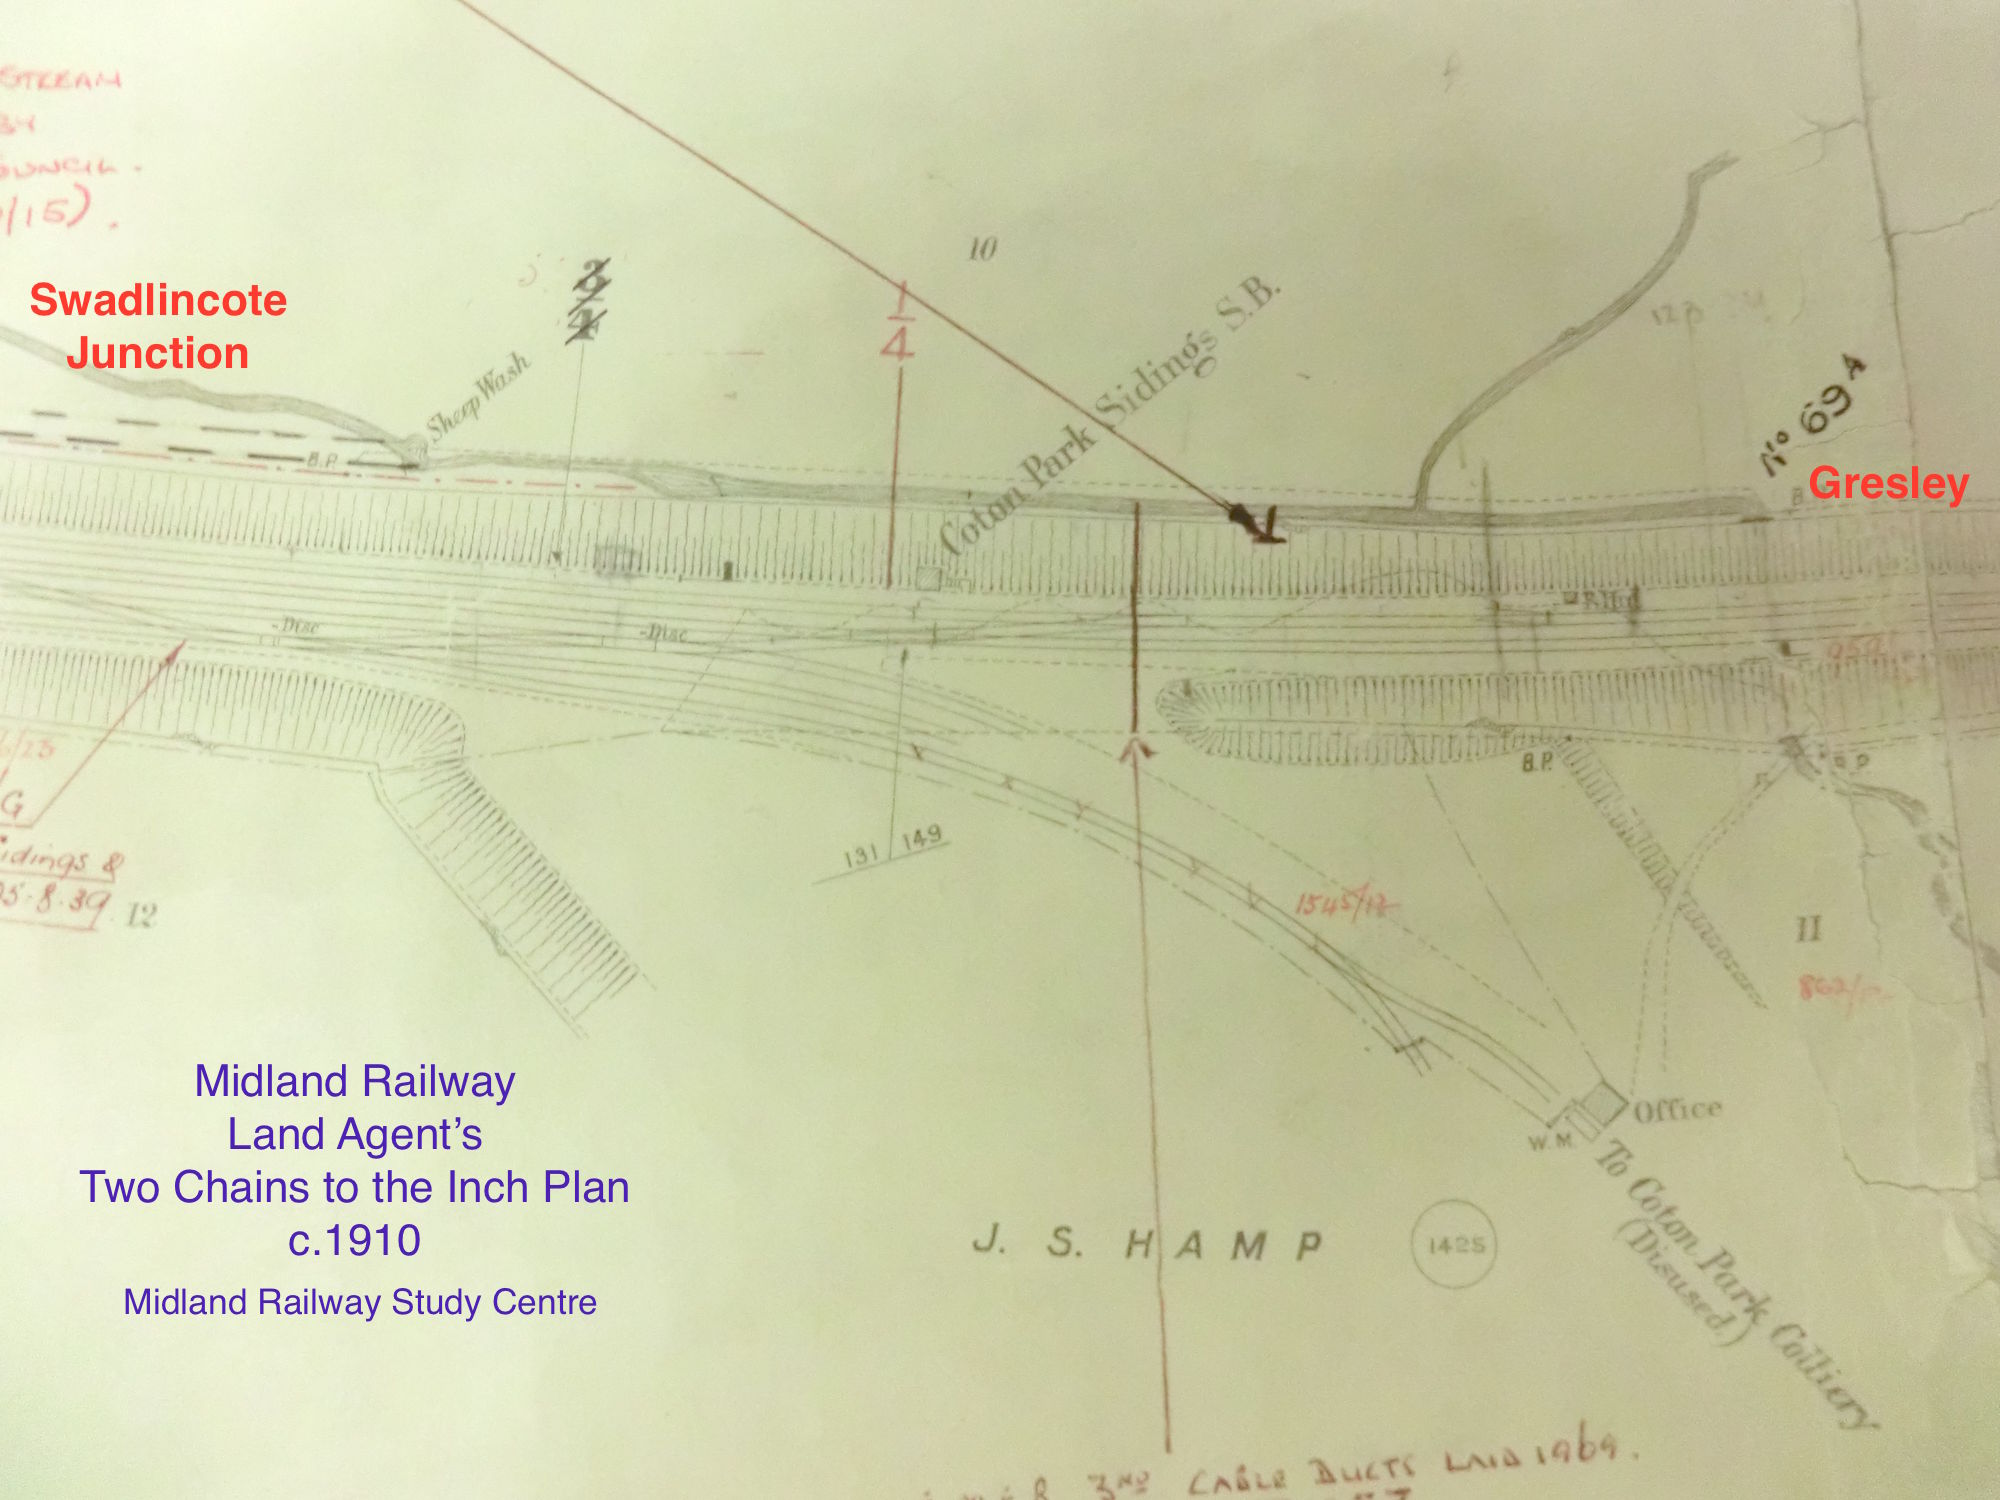 c.1910 plan of Coton Park area